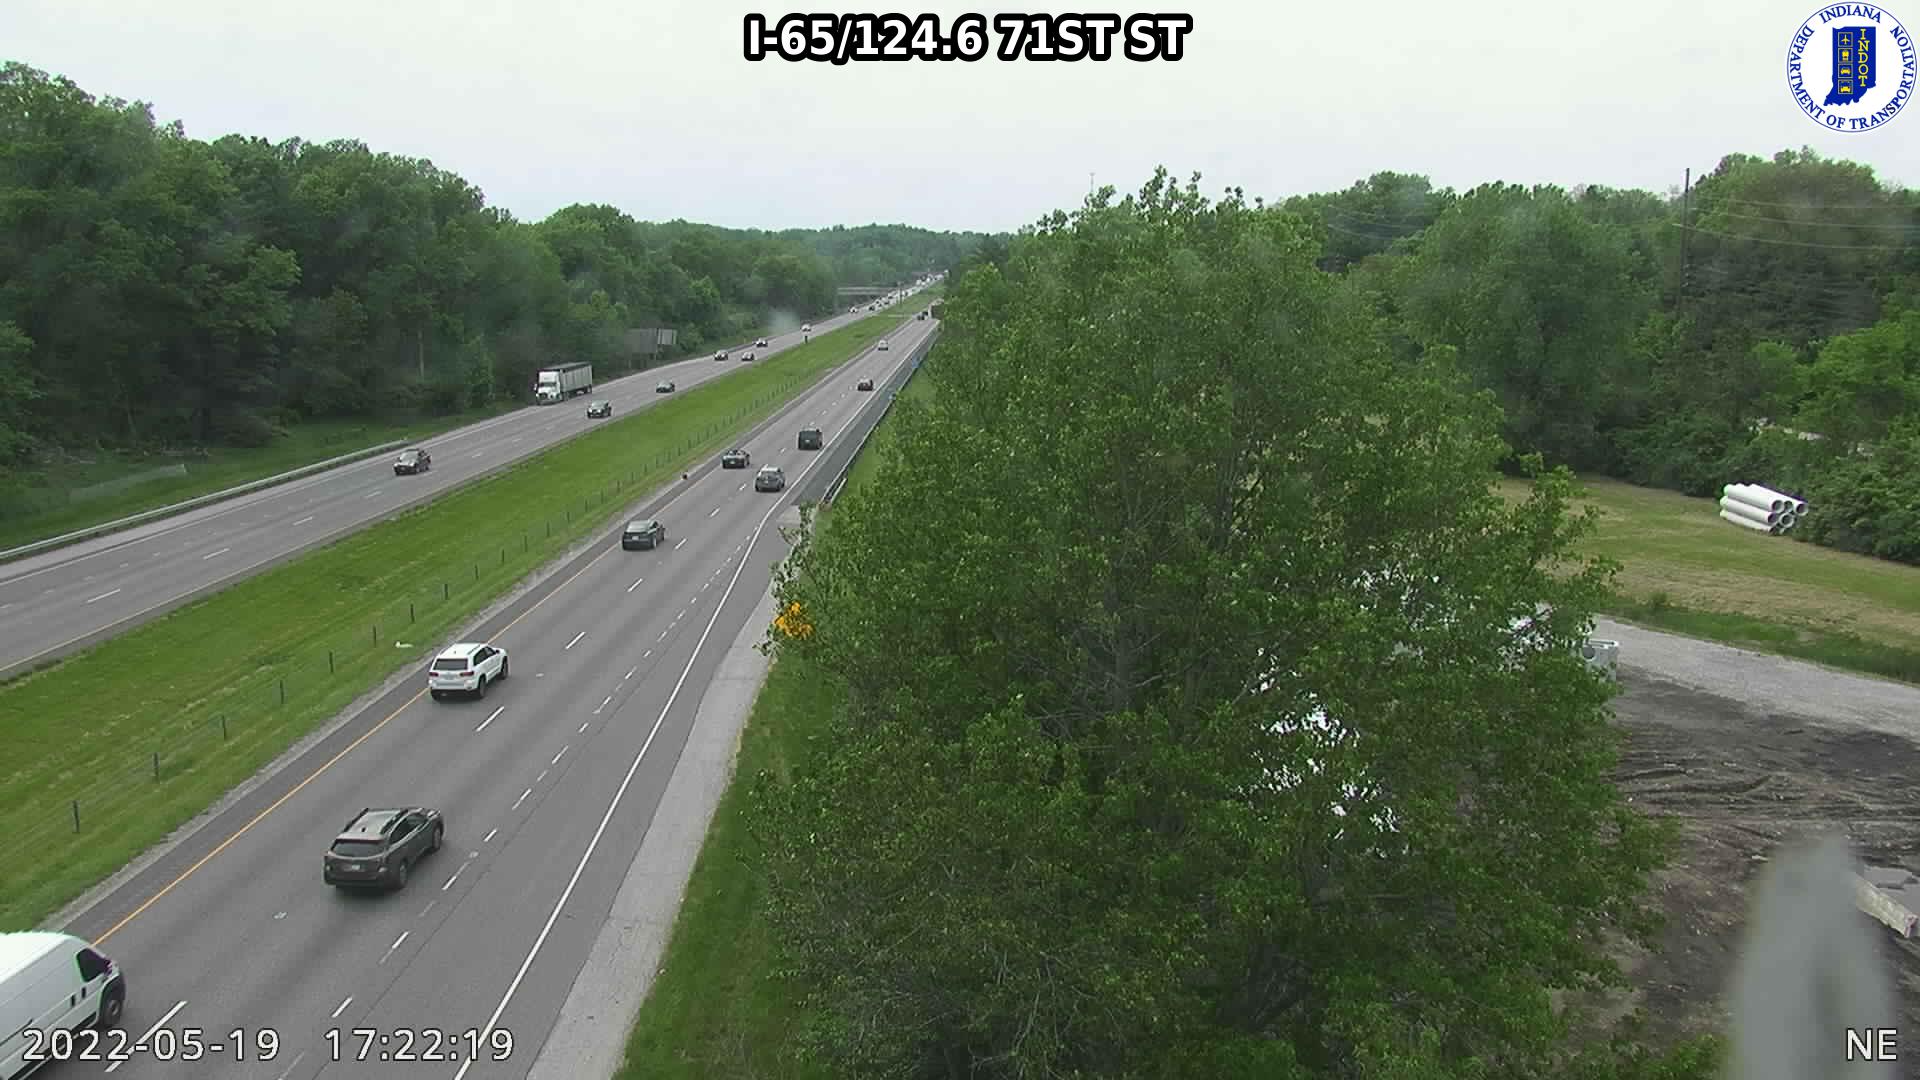 I-65/92.4  CR 300N (134) () - Indiana